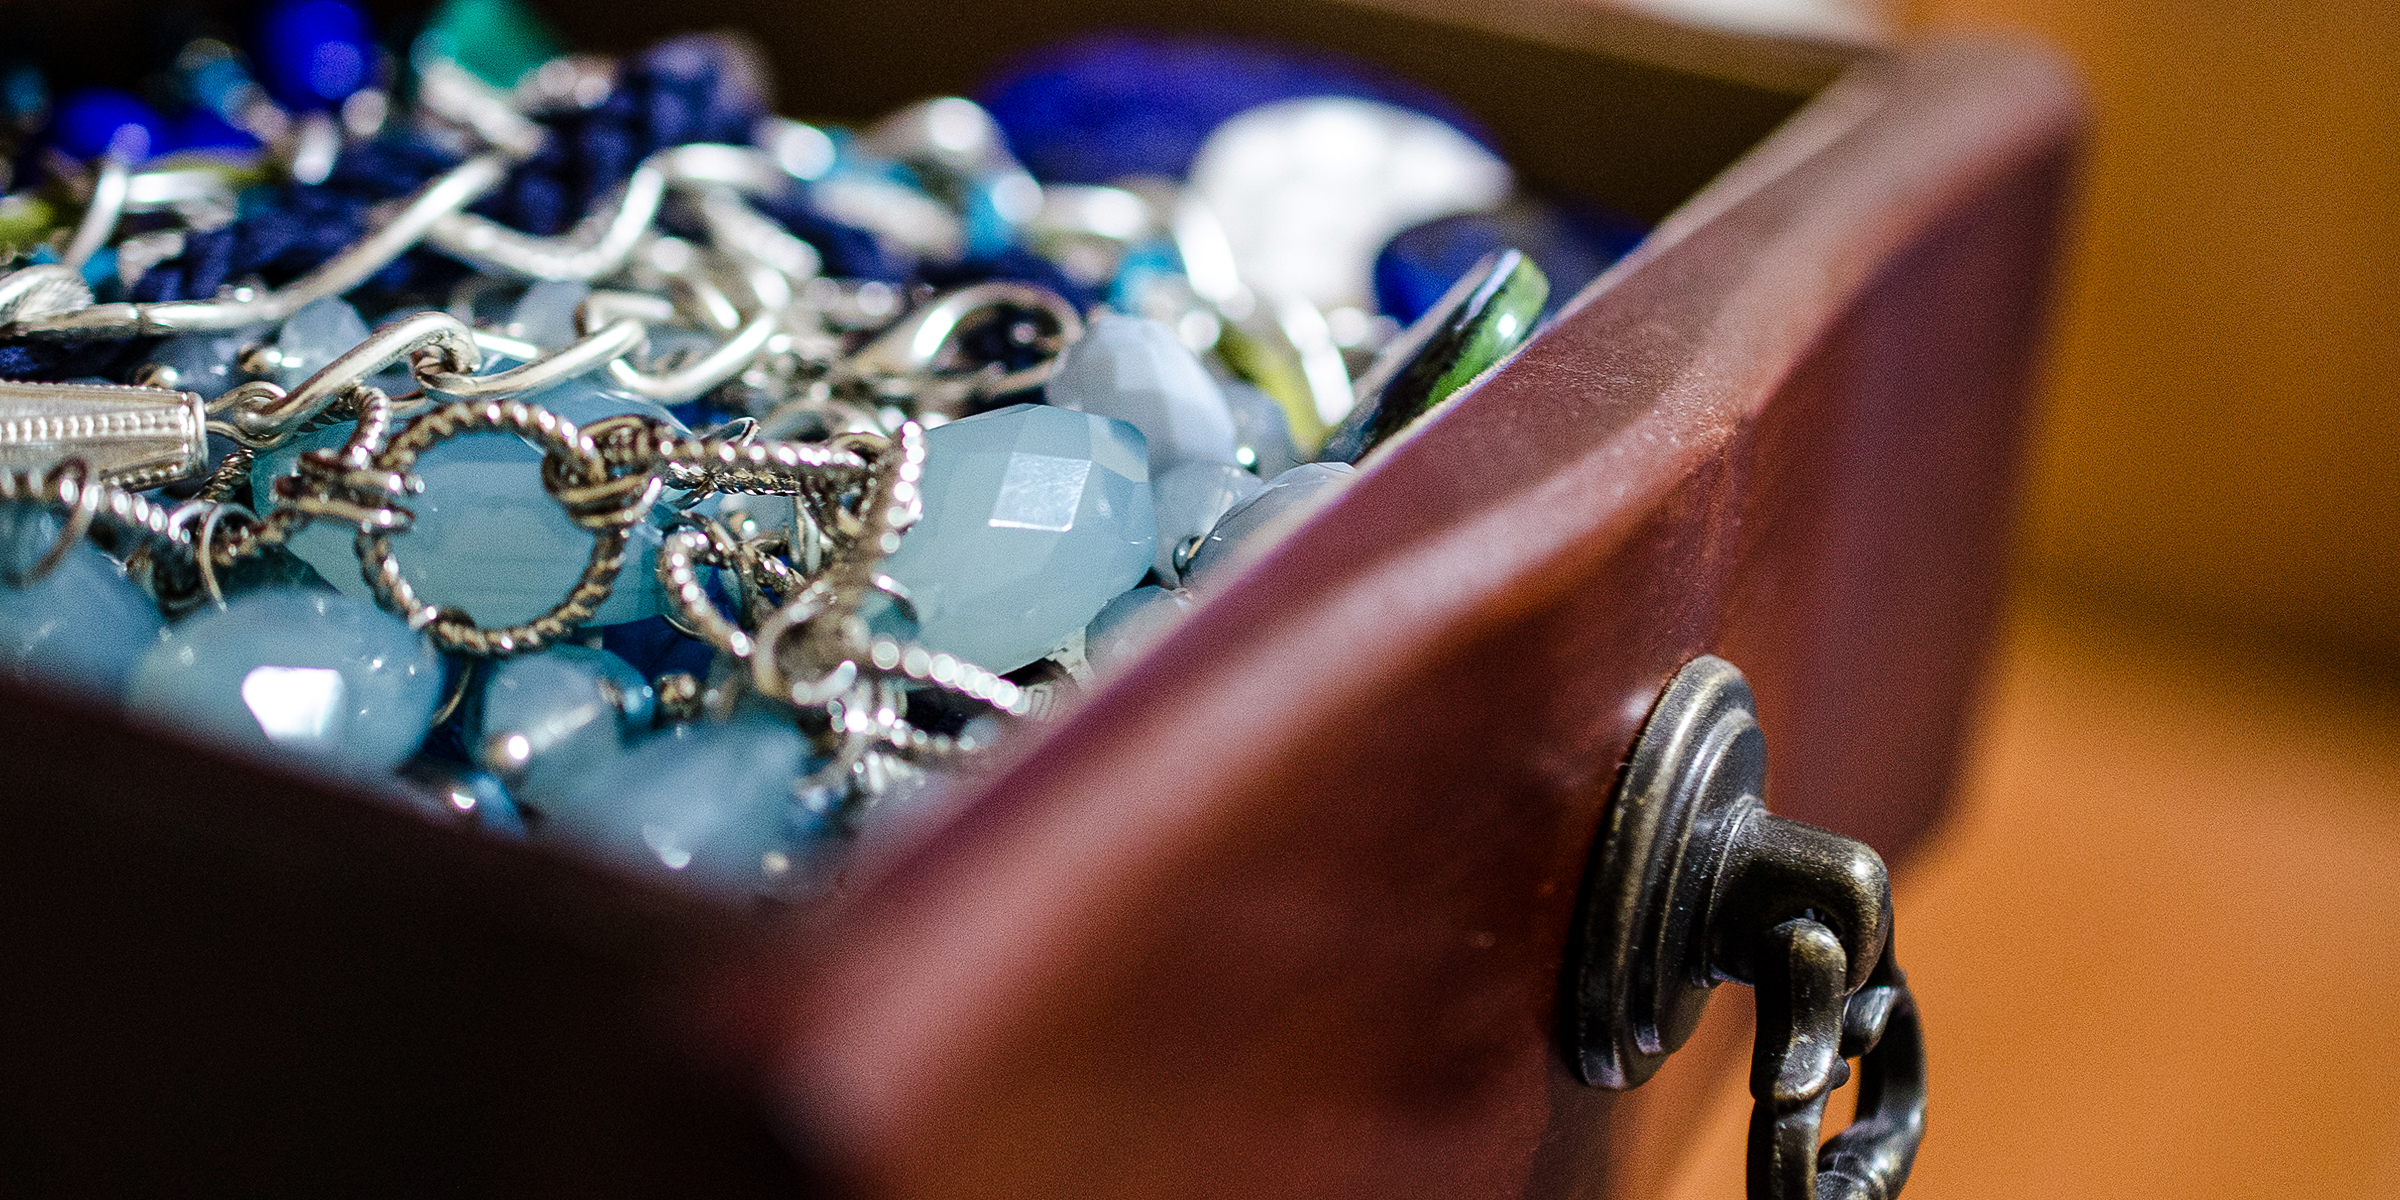 Bijoux dans un tiroir | Source : flickr.com/m01229/CC BY 2.0